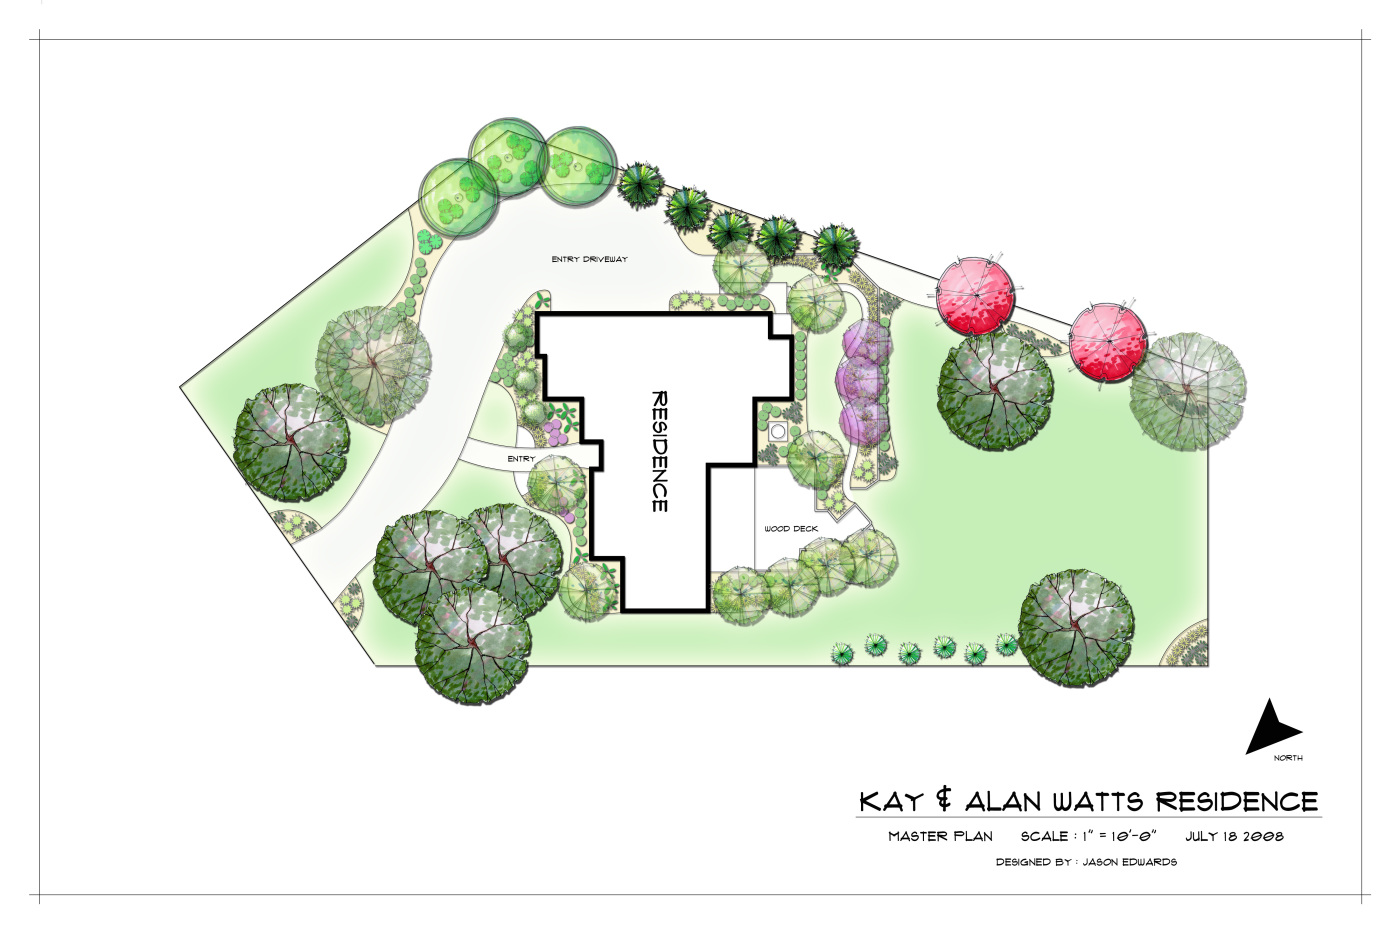 Watts Residence – Master Plan